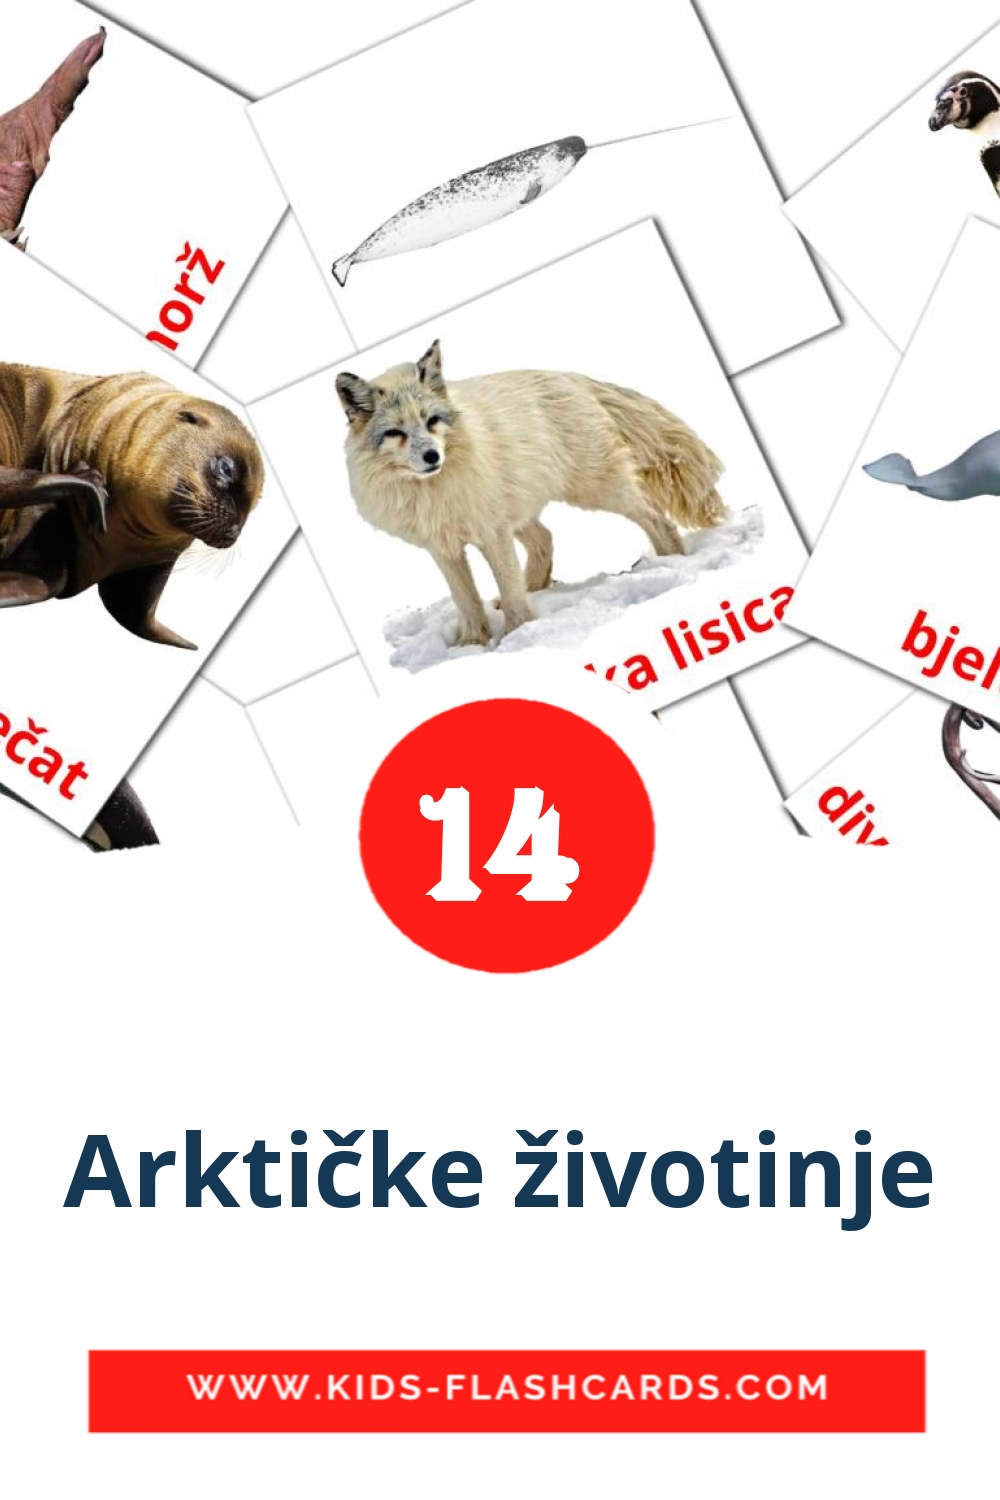 14 carte illustrate di Arktičke životinje per la scuola materna in croato